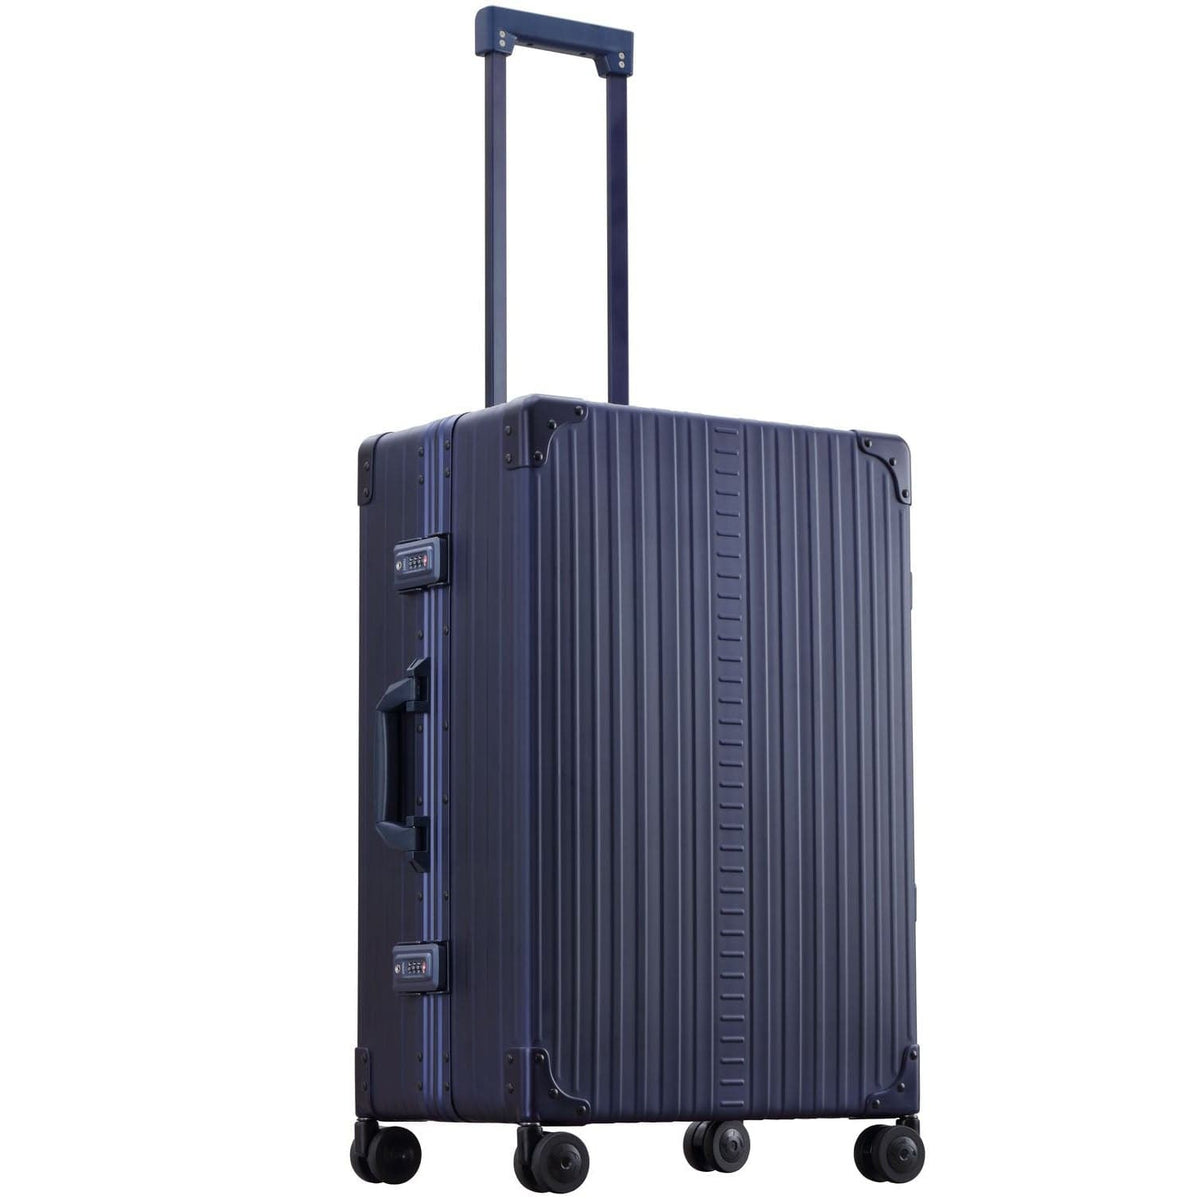 Aleon 26" Traveler Aluminum Hardside Checked Luggage